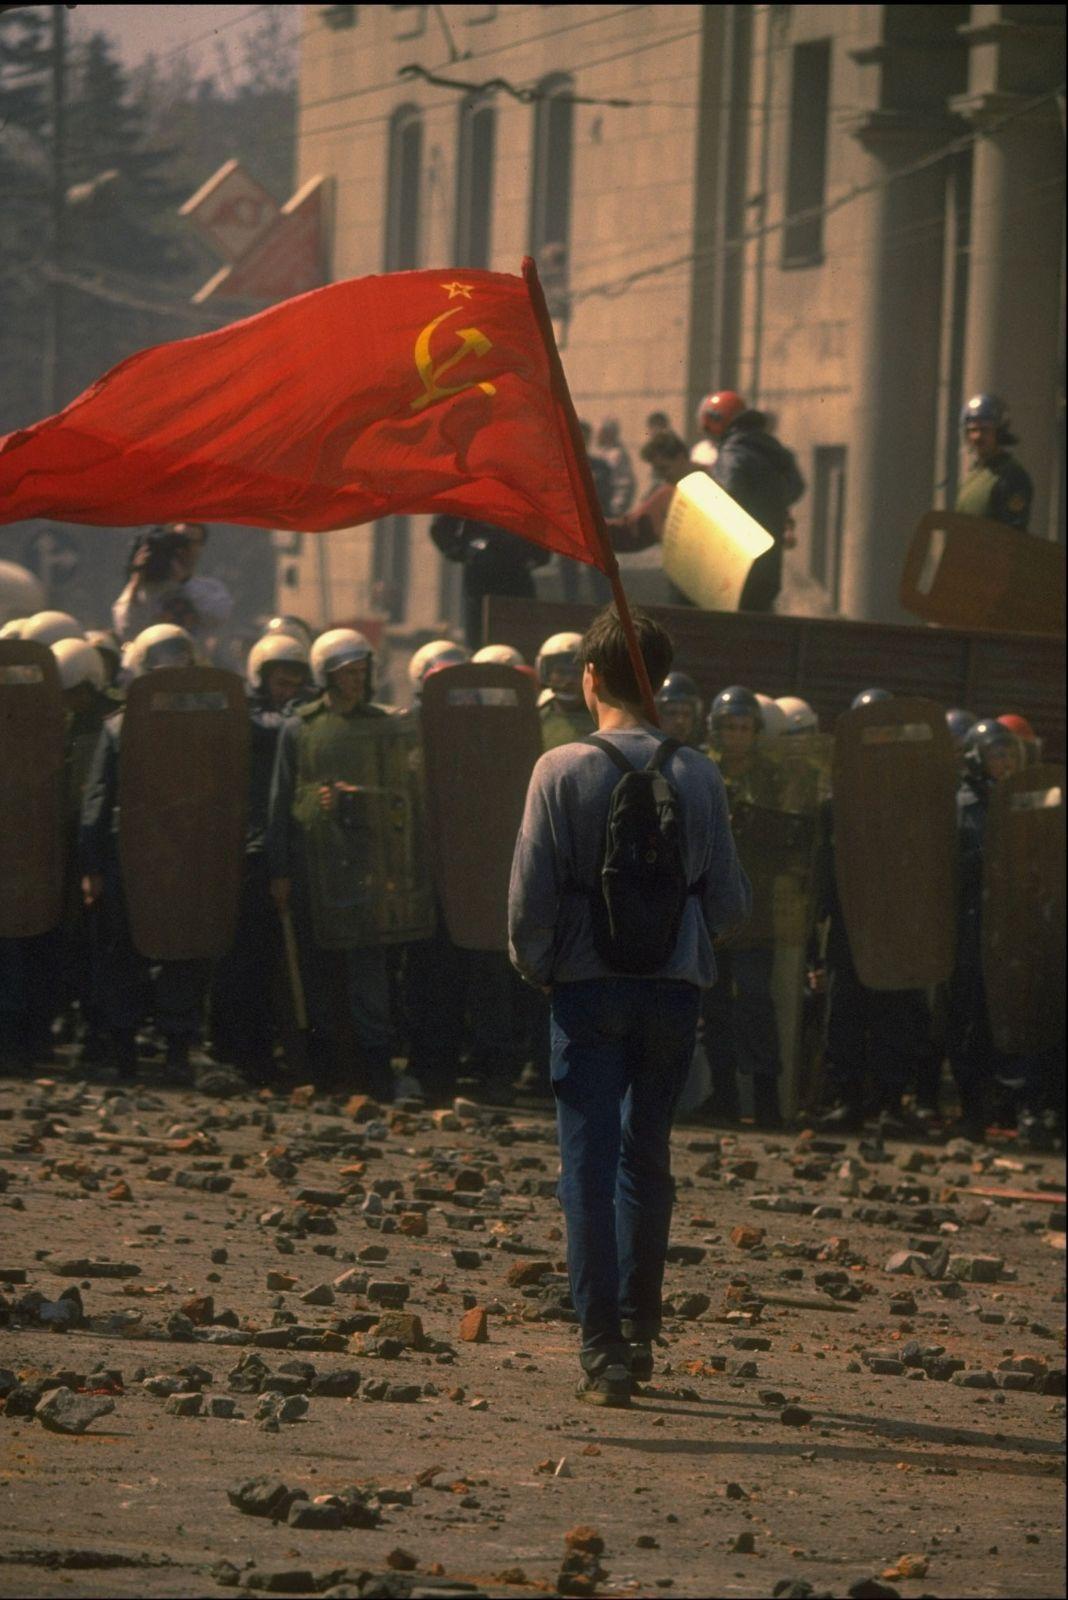 少年是一位俄共党员,肩上扛着的是苏联国旗事实上,少年并不孤独